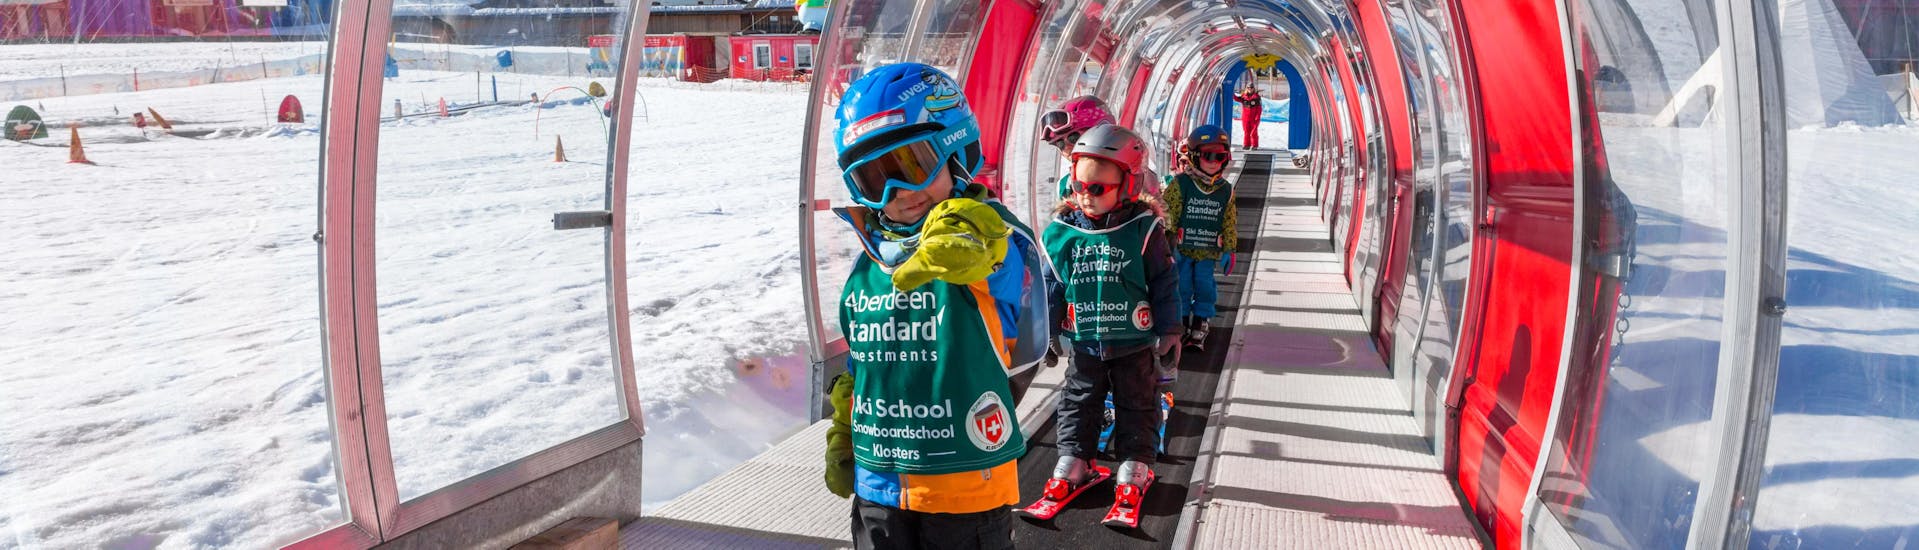 Premier Cours de ski Enfants (jusqu'à 6 ans).